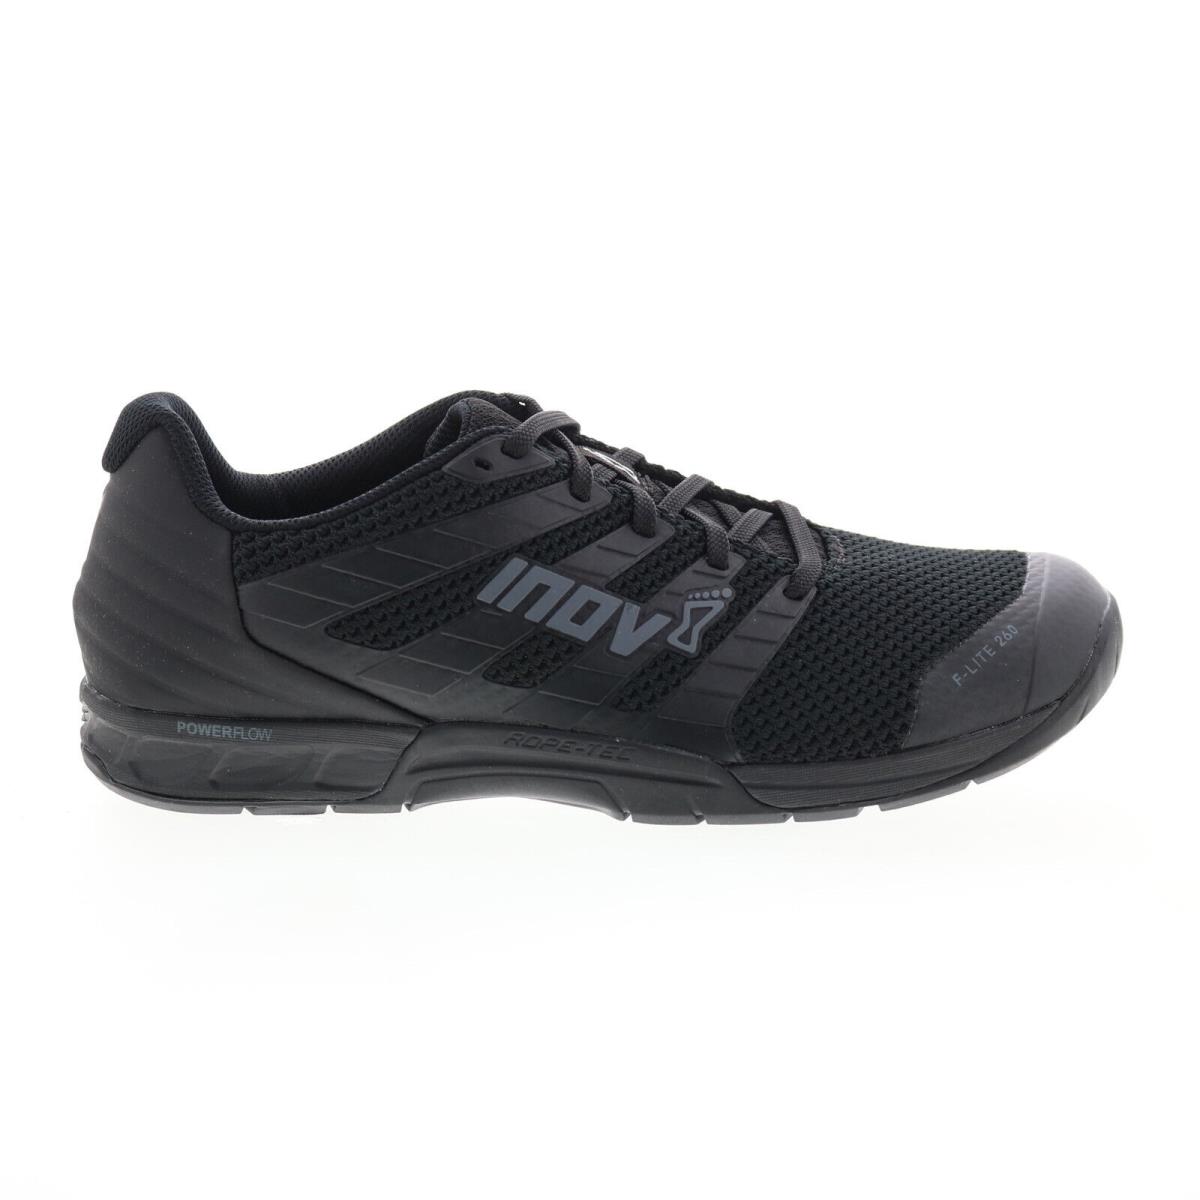 Inov-8 F-lite 260 V2 000992-BK Mens Black Athletic Cross Training Shoes 8.5